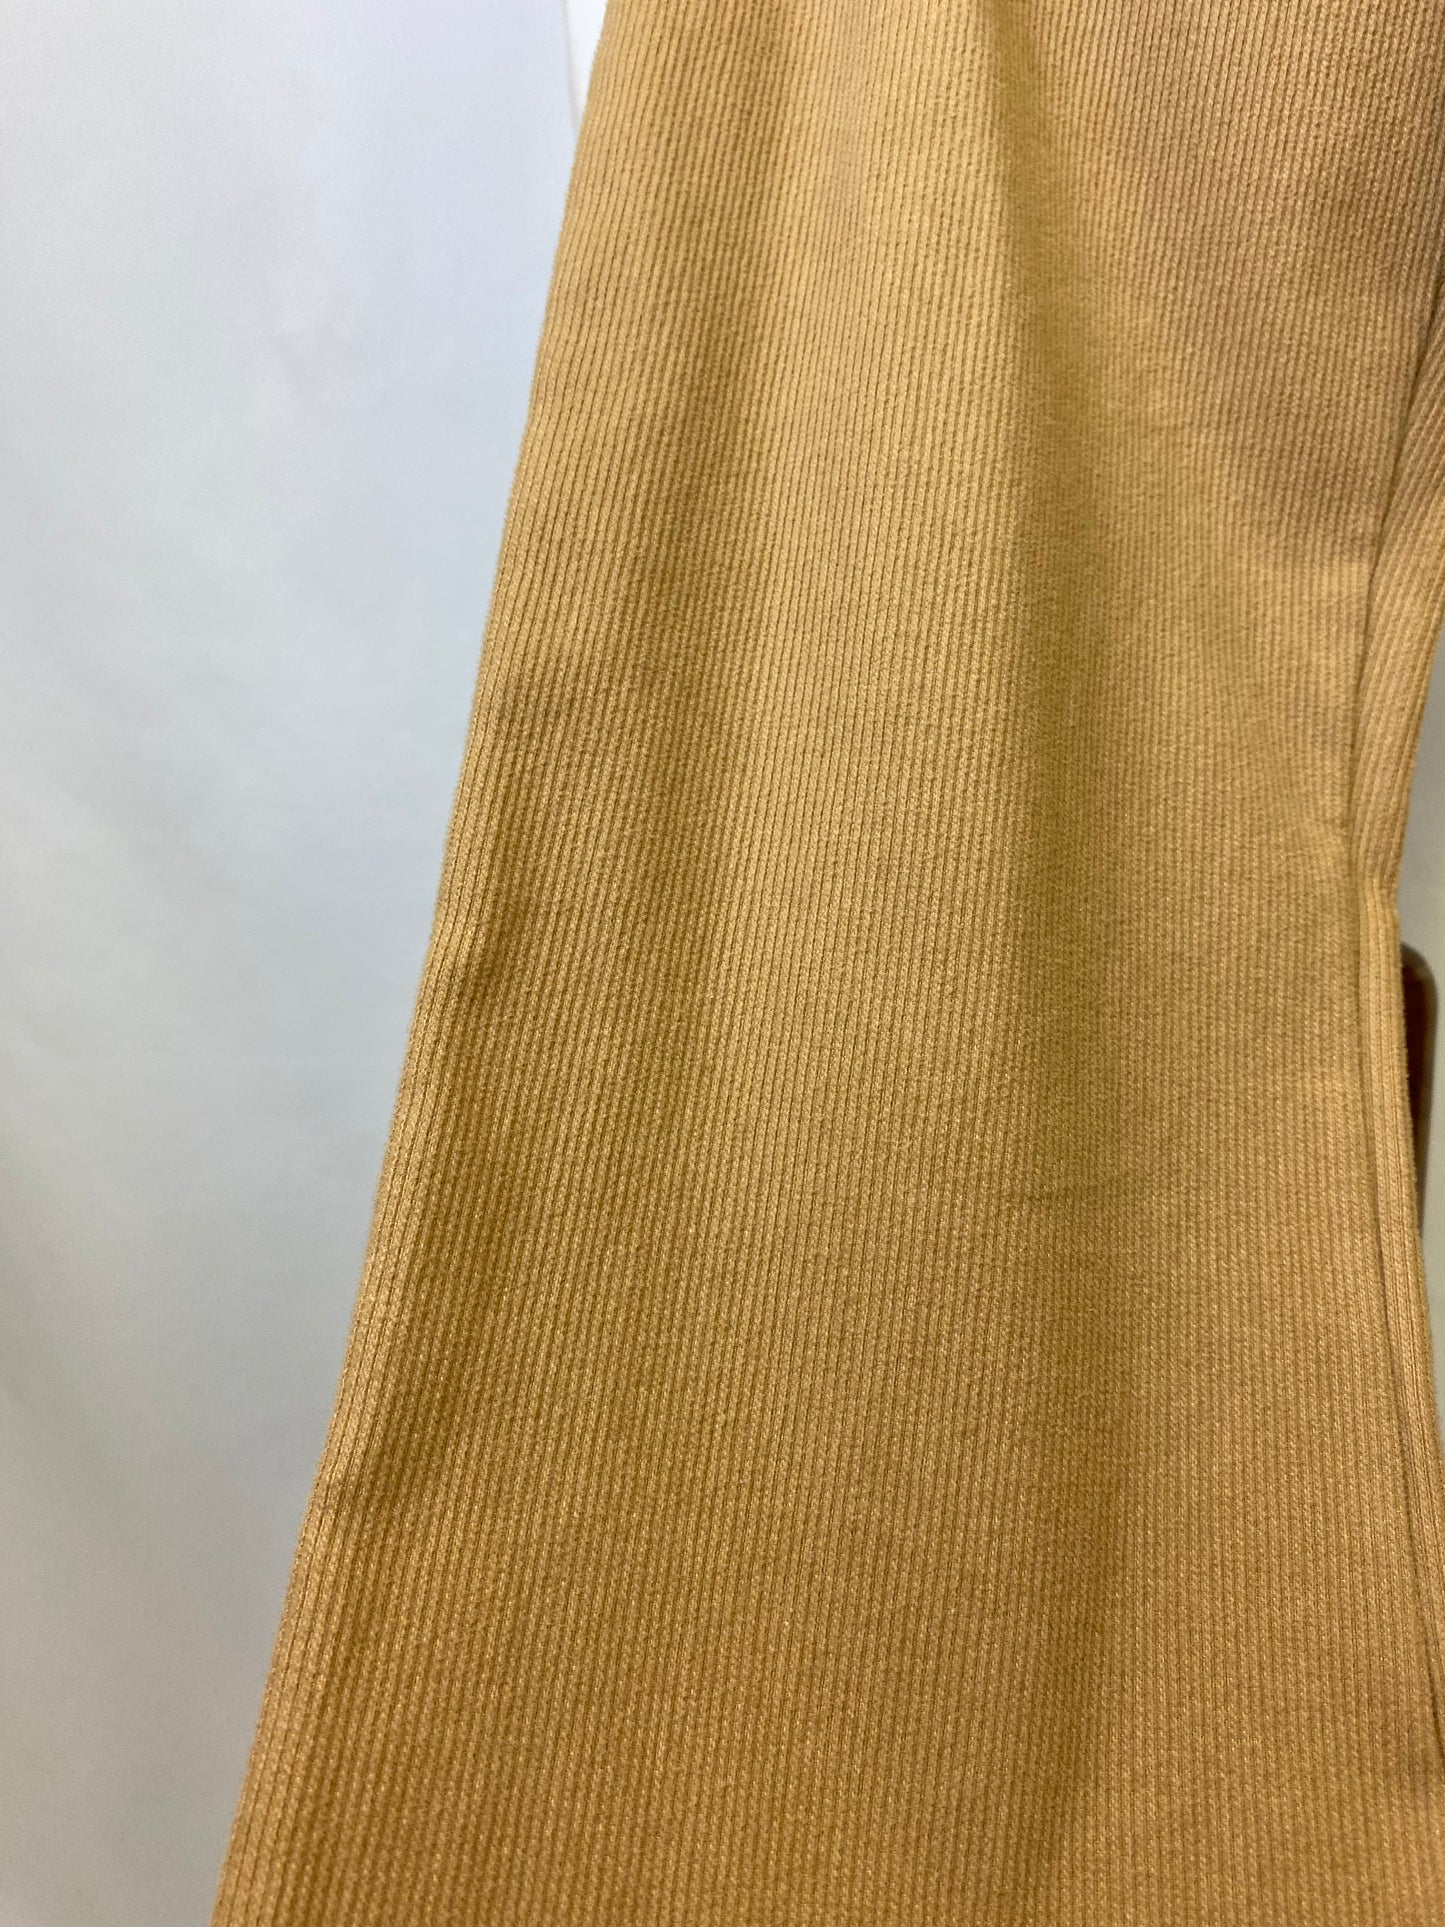 Pantaloni beige - TG. 38/40